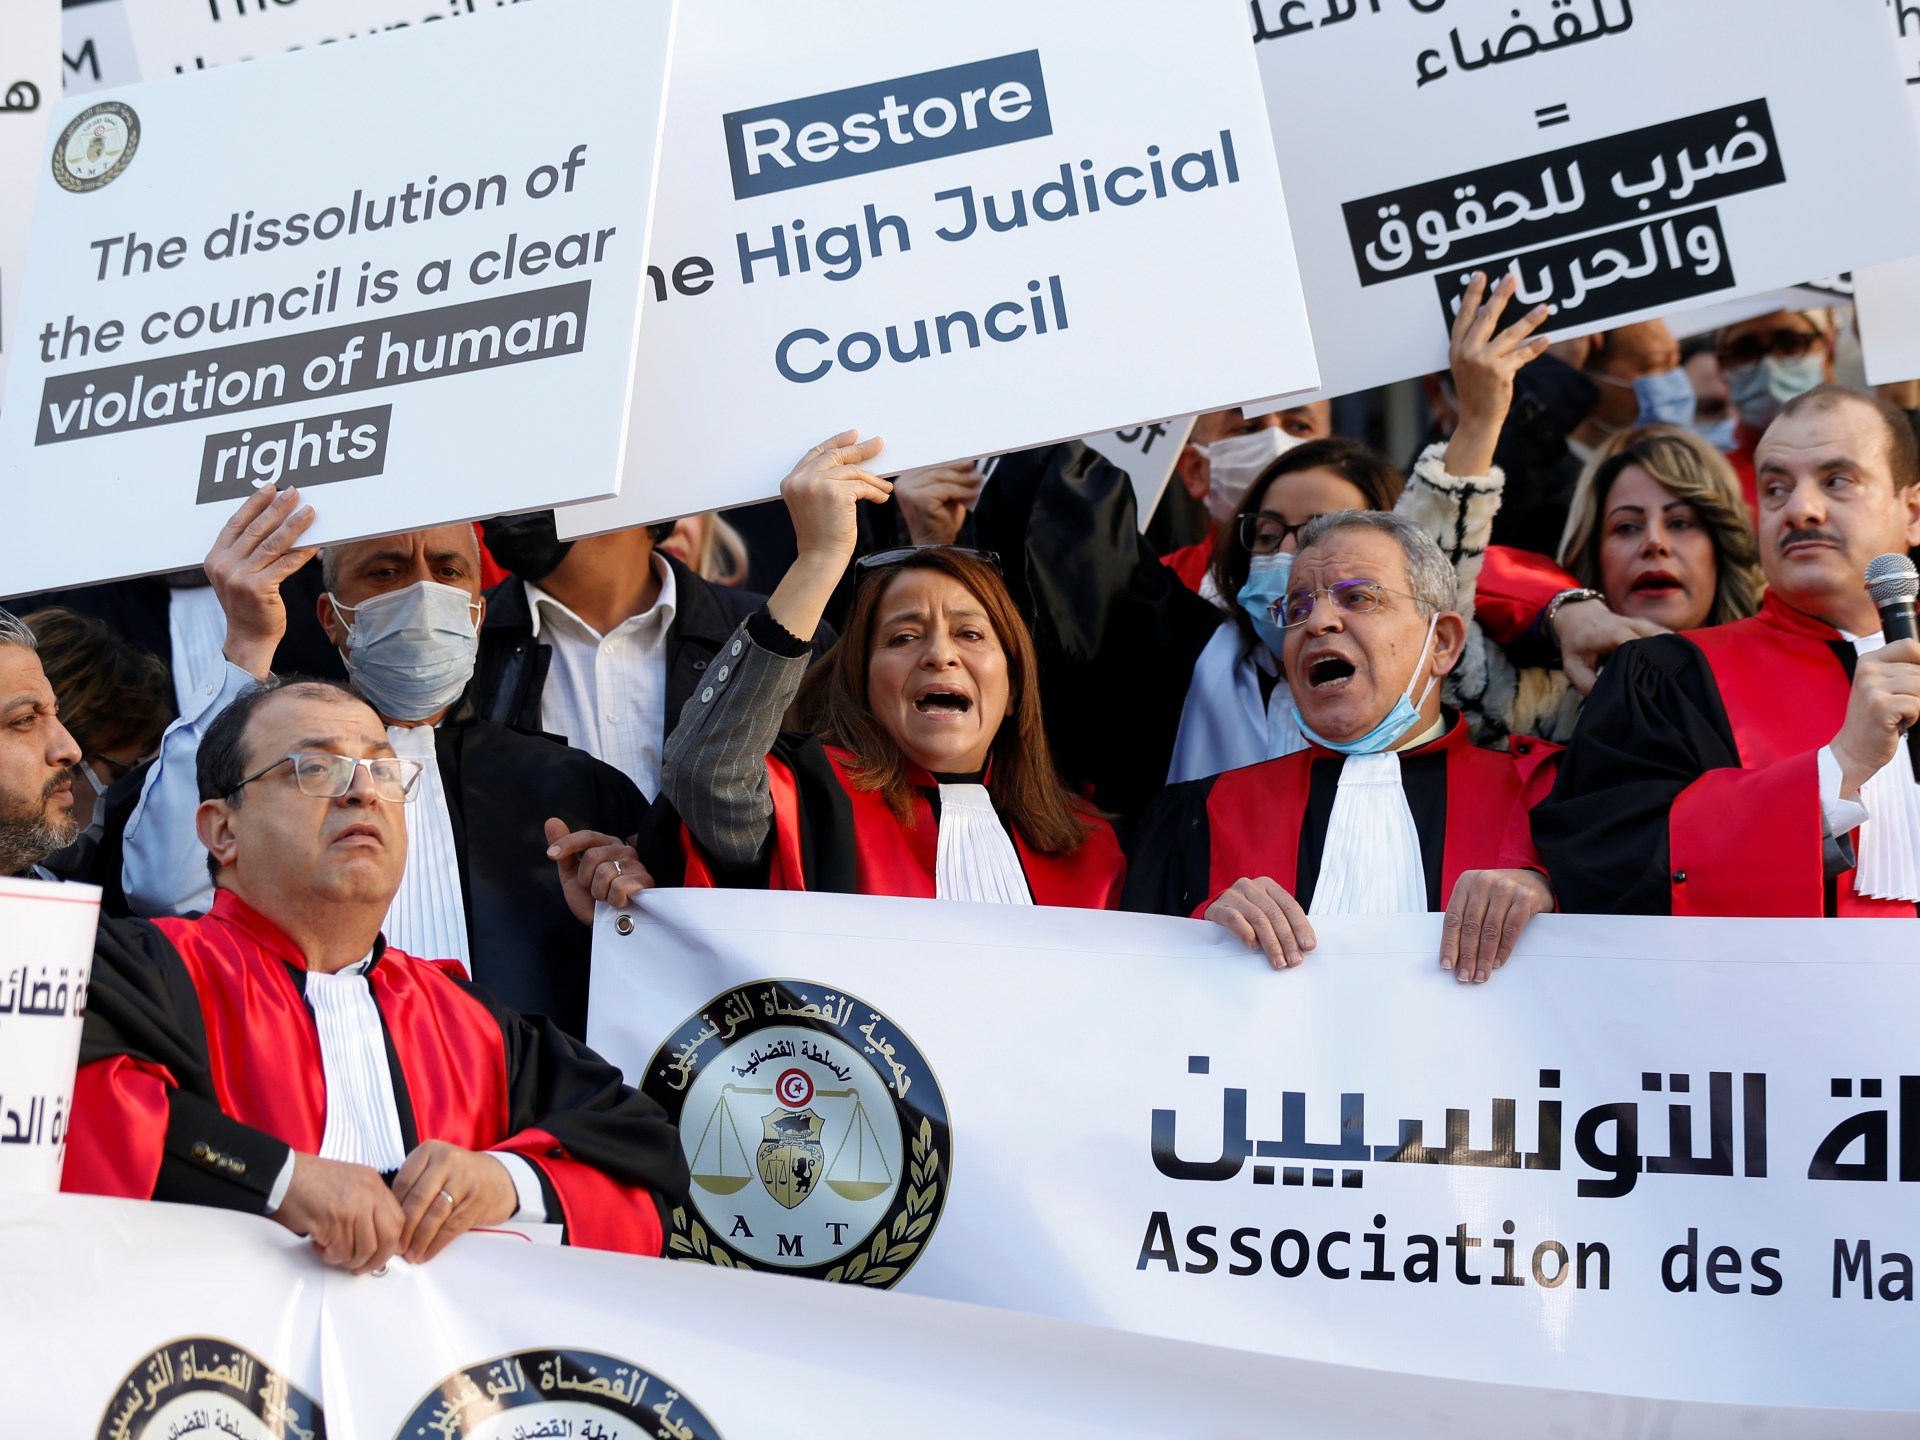 Kelompok hak asasi manusia mengutuk serangan terhadap pengadilan Tunisia |  Berita Hak Asasi Manusia